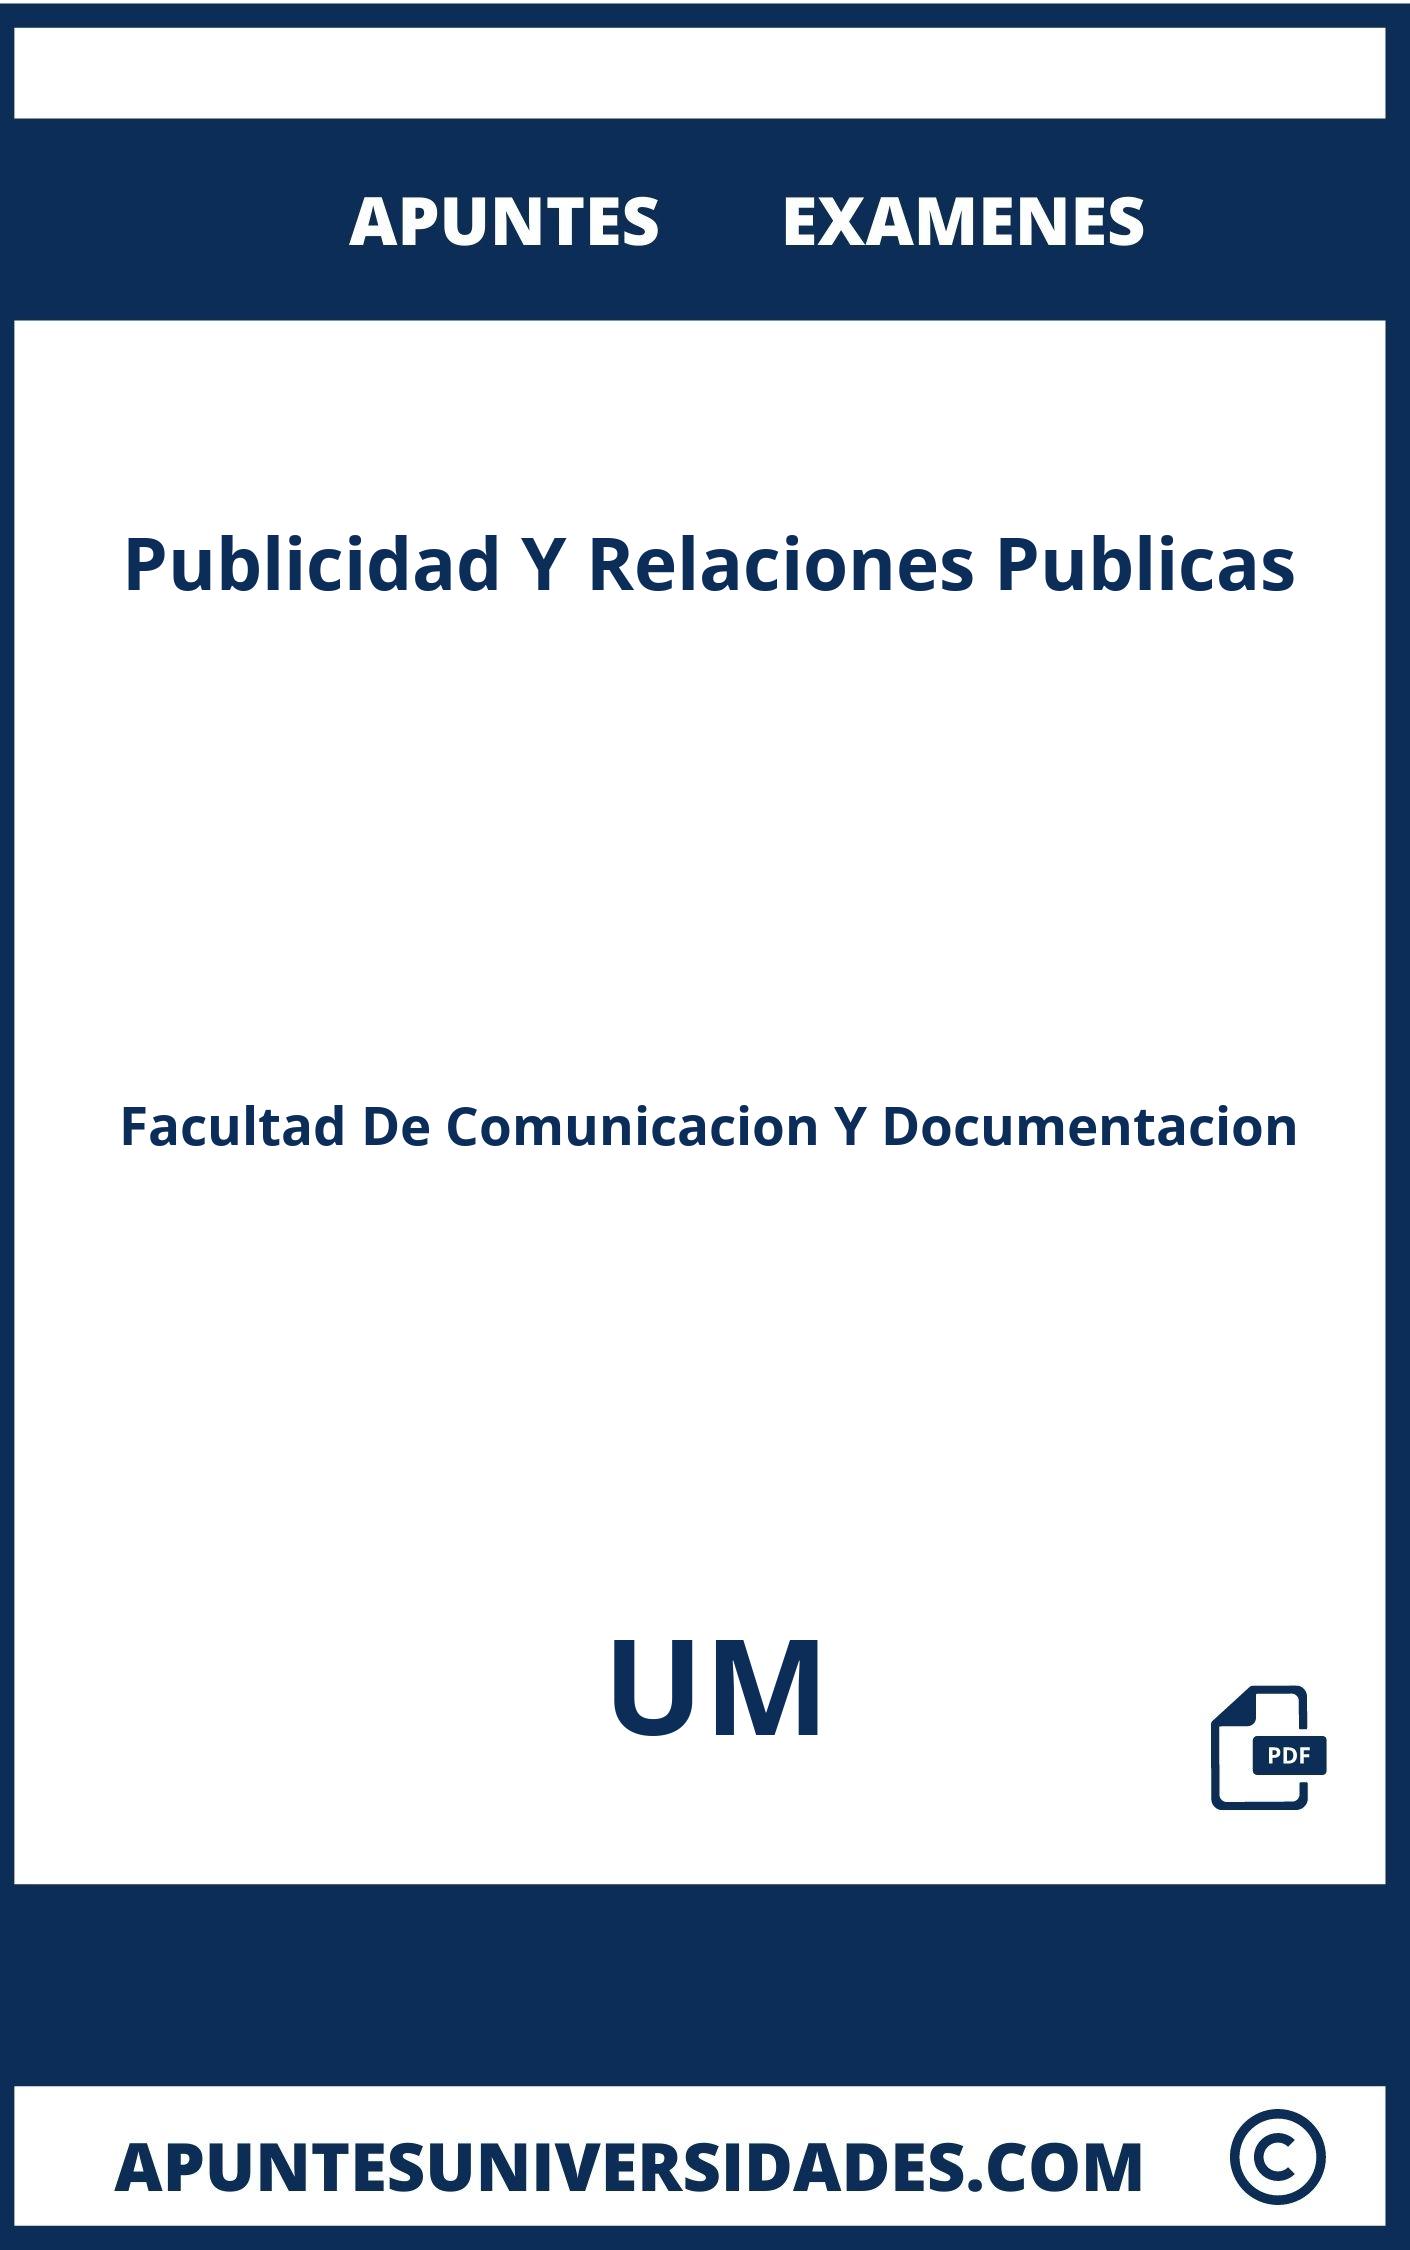 Apuntes Examenes Publicidad Y Relaciones Publicas UM